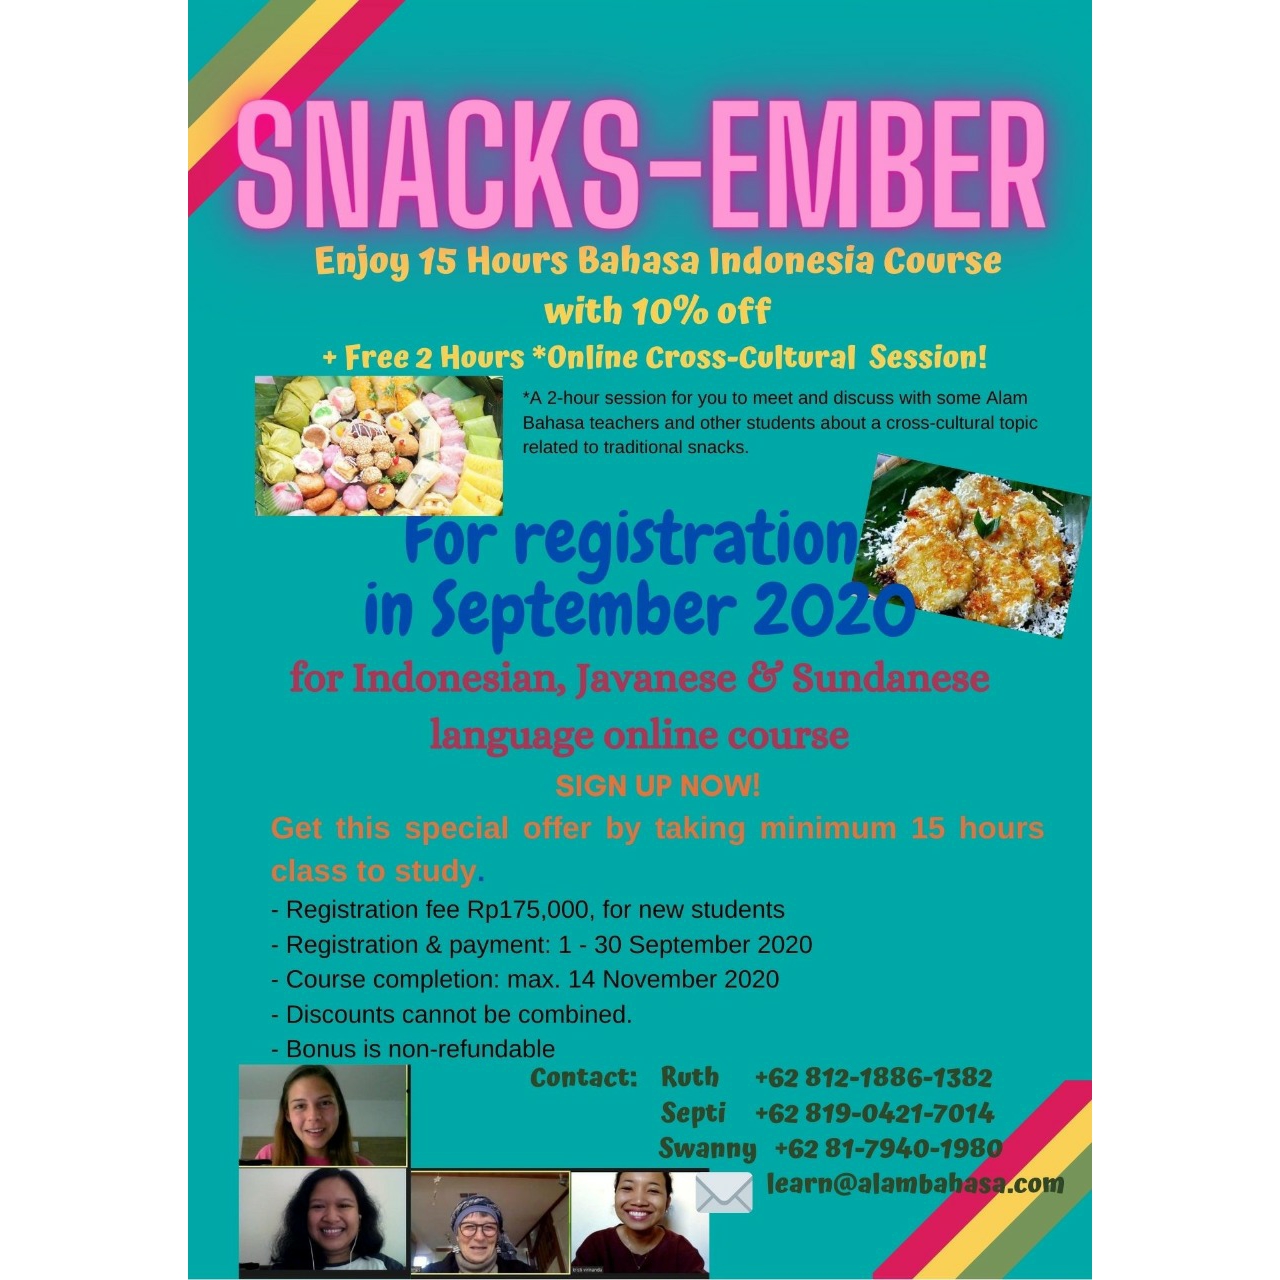 Snacks-ember -- September Promo